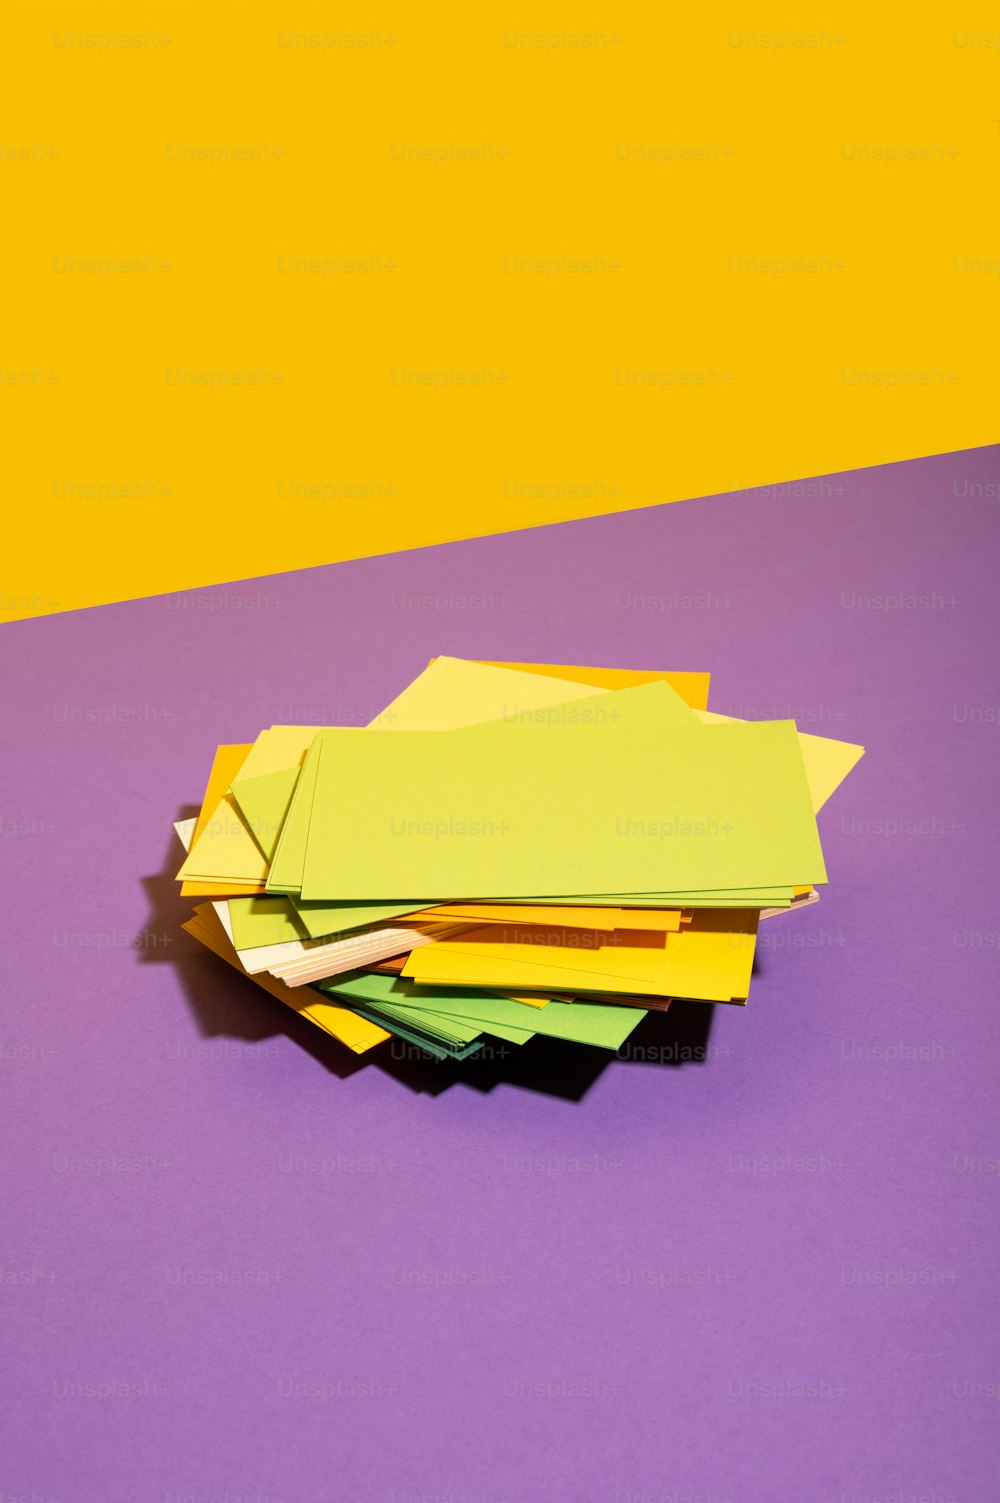 Una pila de papeles amarillos y verdes sobre un fondo púrpura y amarillo